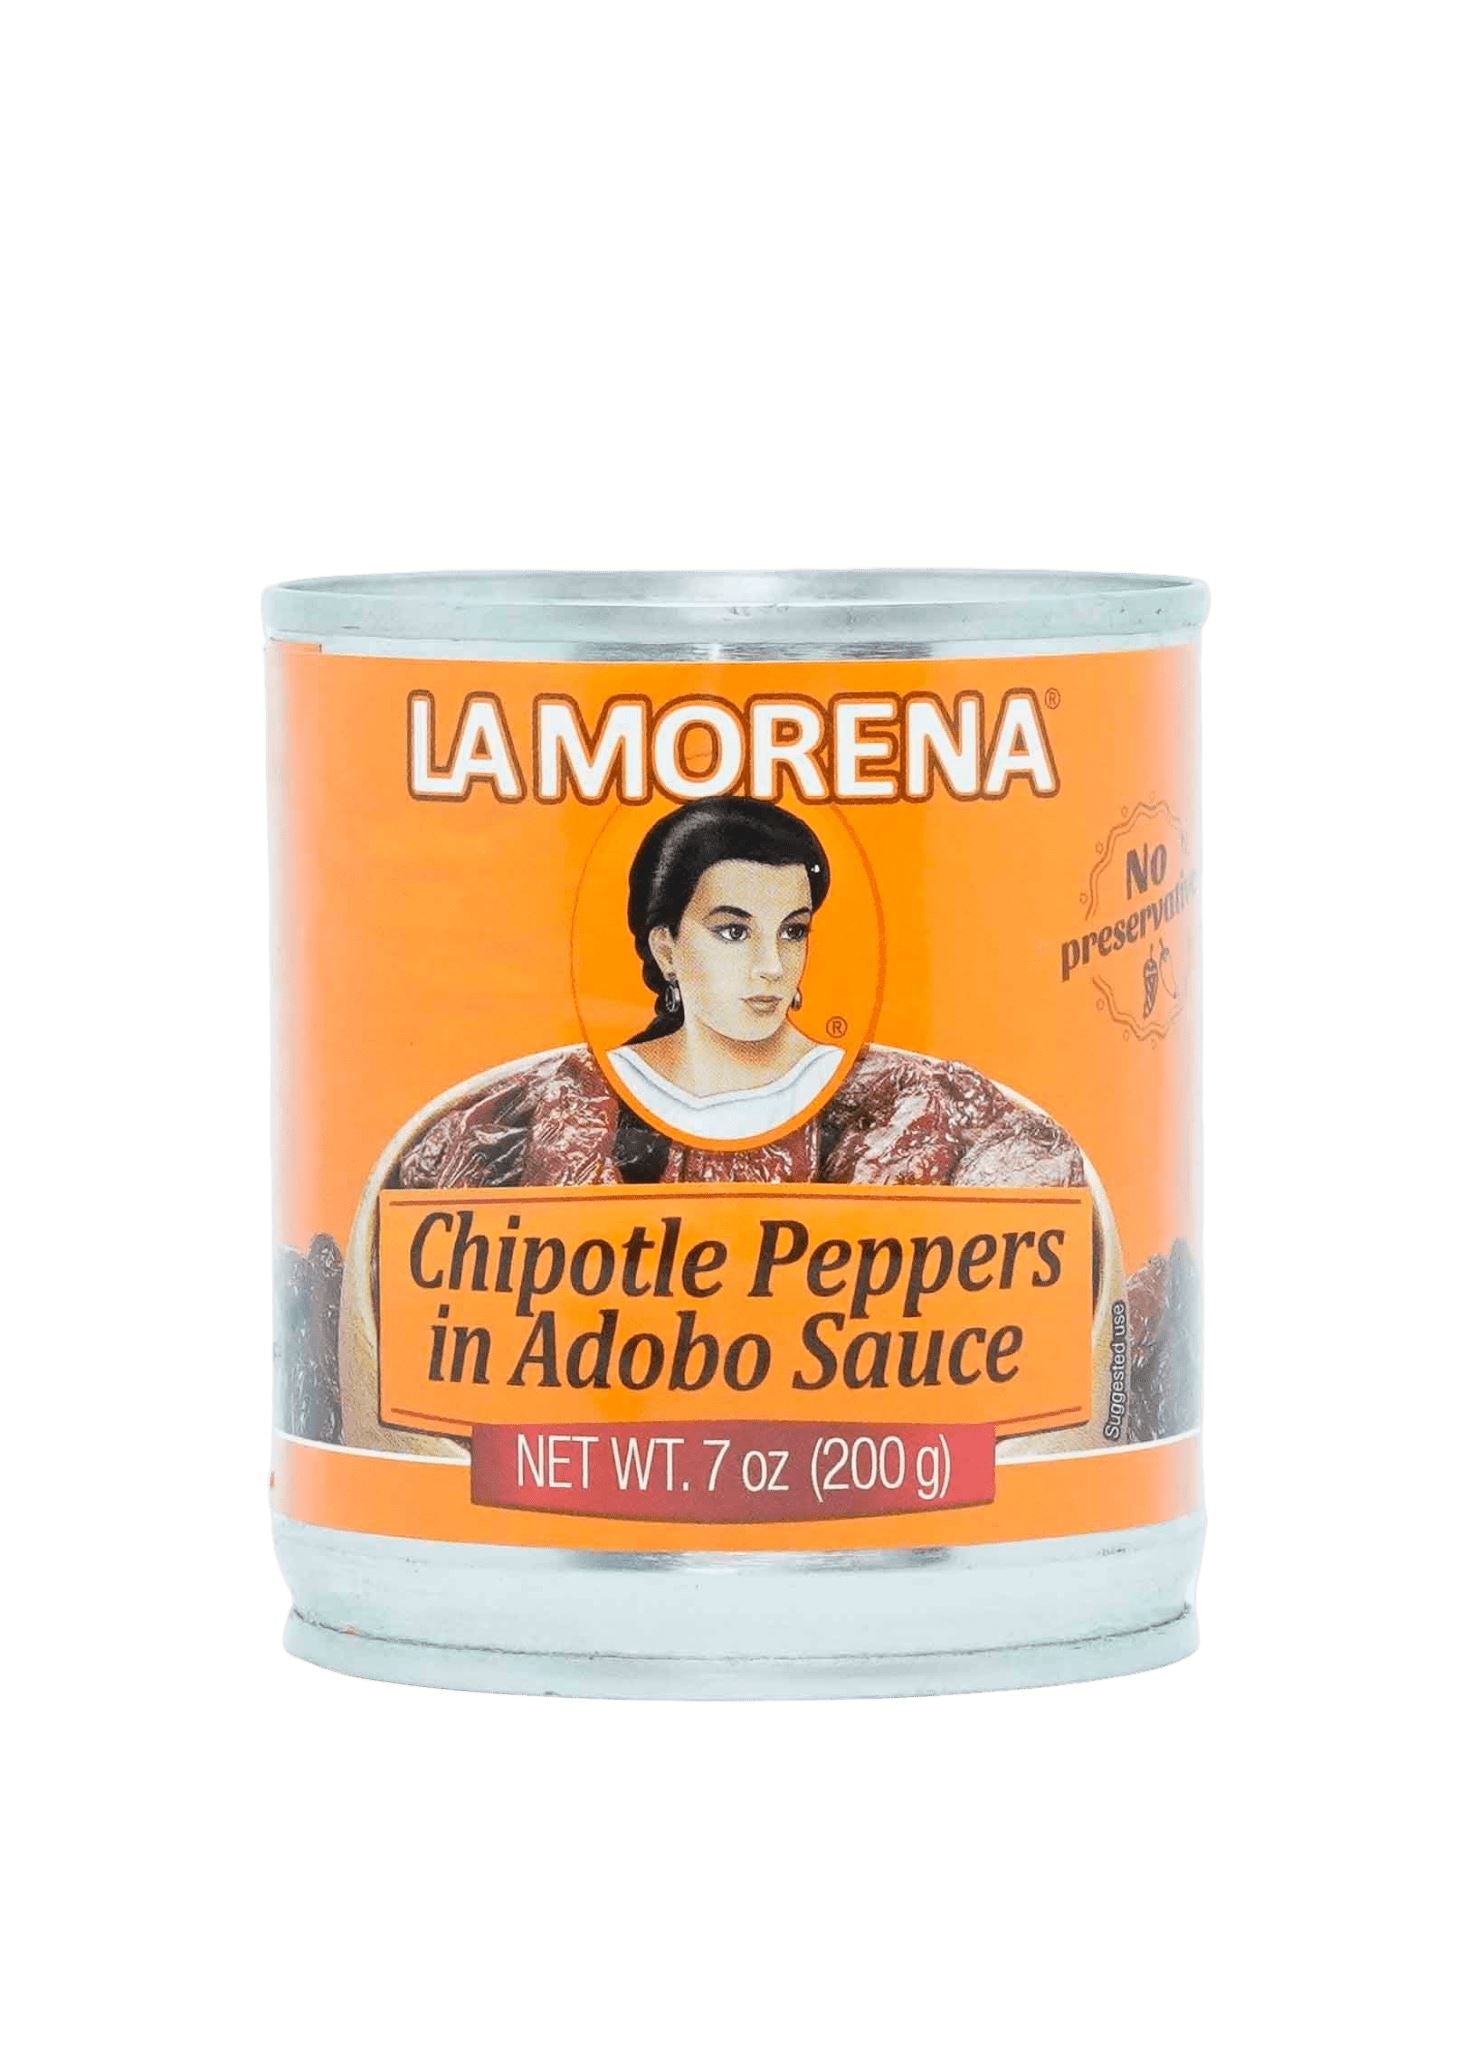 La Morena Chipotle Peppers in Adobo Sauce 200g Chillies La Morena 